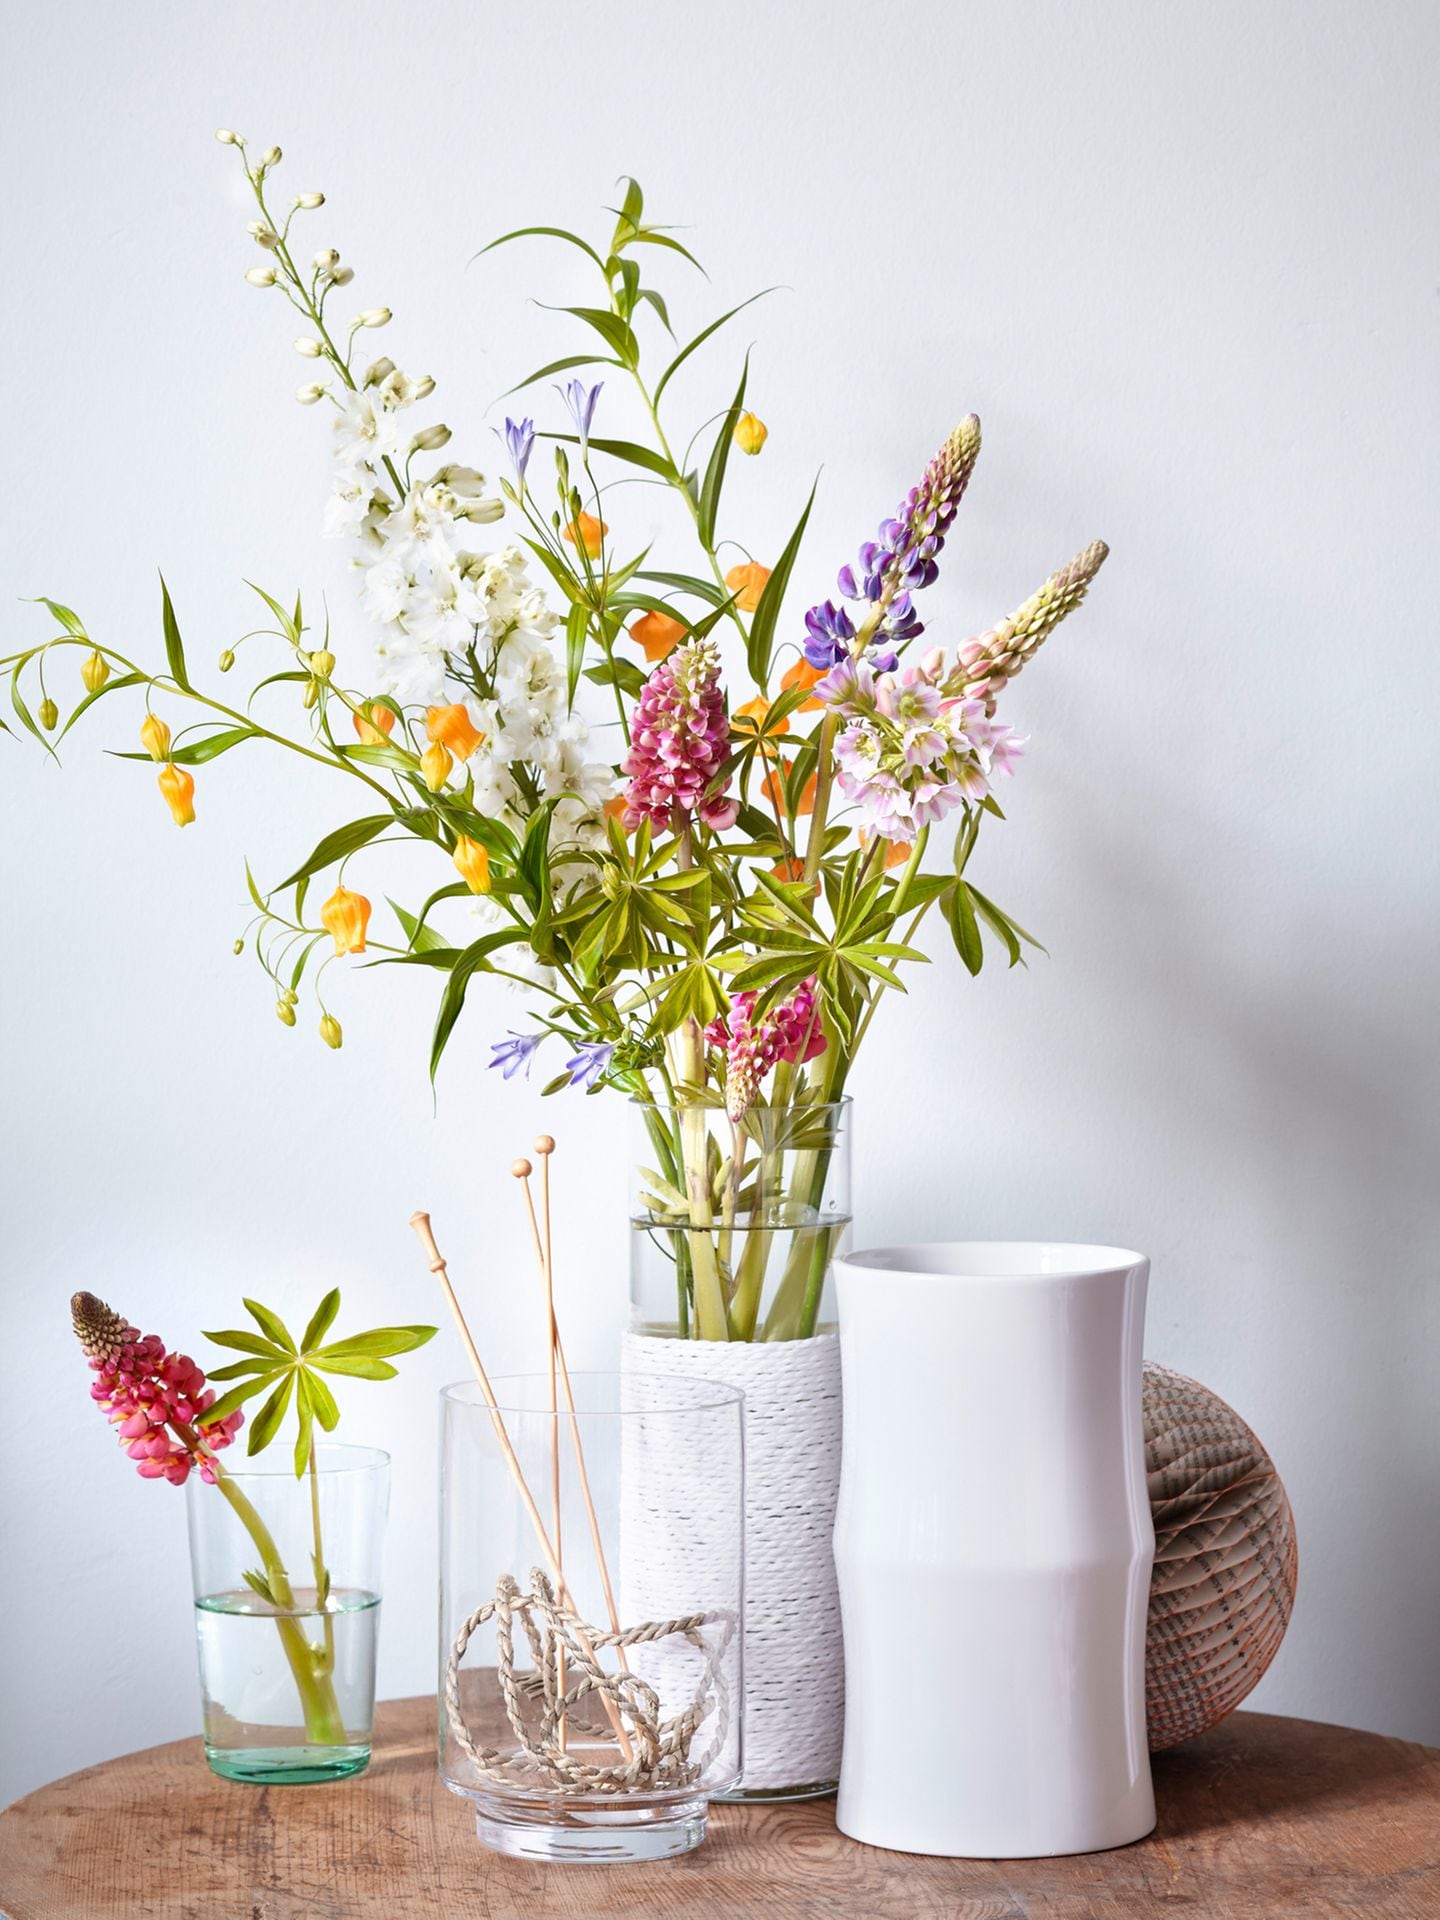 Vase "Dinard" von Habitat, Vase "Bamboo" von Asa